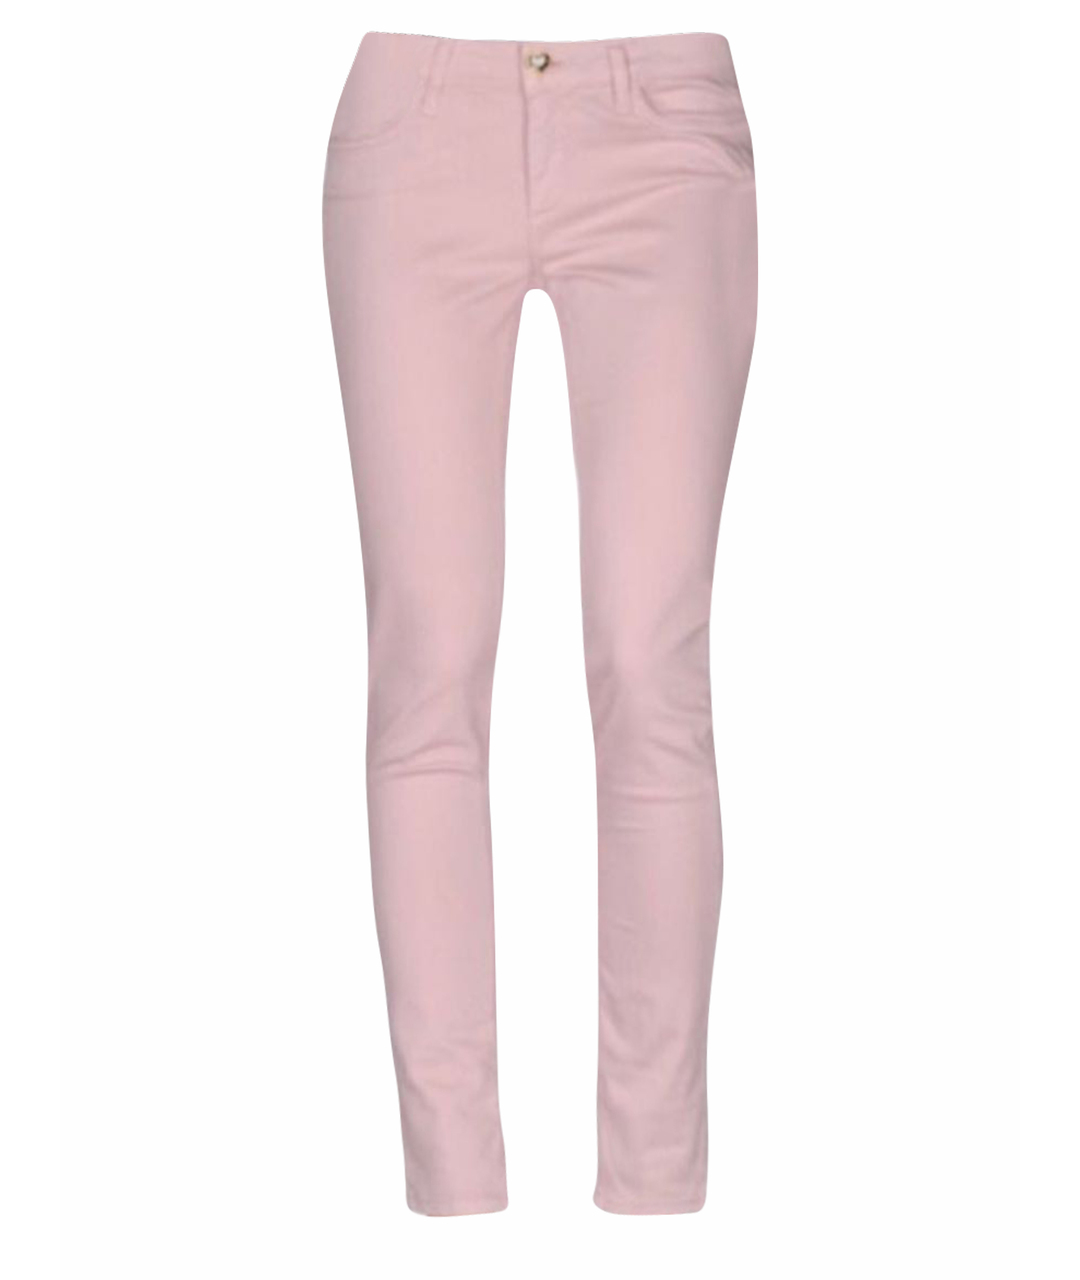 TWIN-SET Розовые хлопковые джинсы слим, фото 1